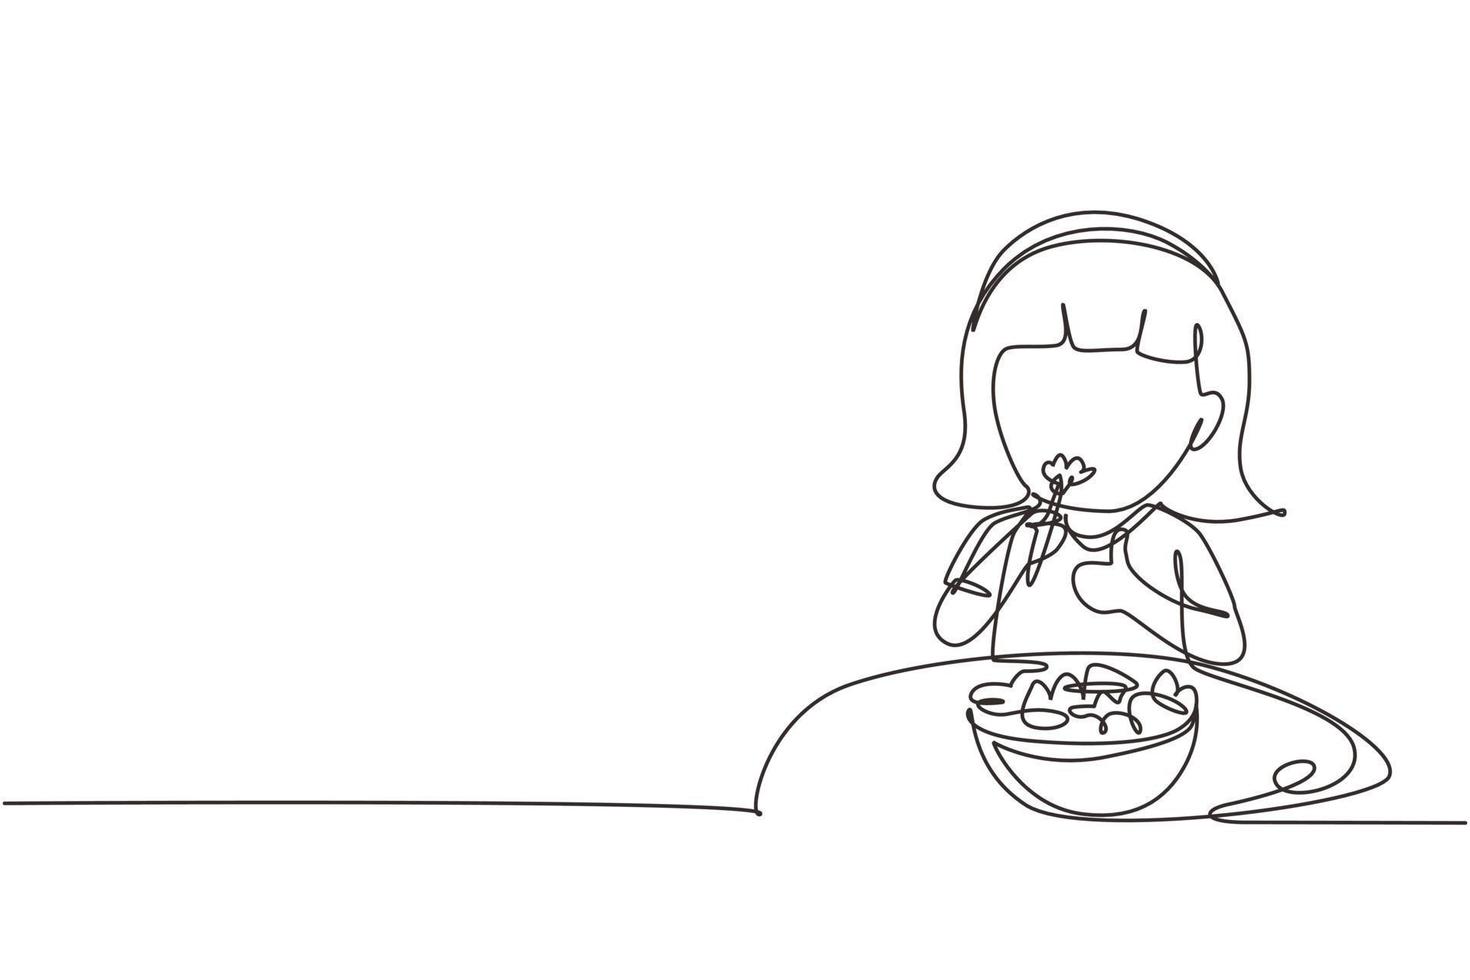 einzelne einzeilige Zeichnung kleines Mädchen, das frischen Gemüsesalat isst und Daumen nach oben zeigt. Kind isst Salat. gesundes essen für kinder. moderne grafische vektorillustration des ununterbrochenen zeichnendesigns vektor